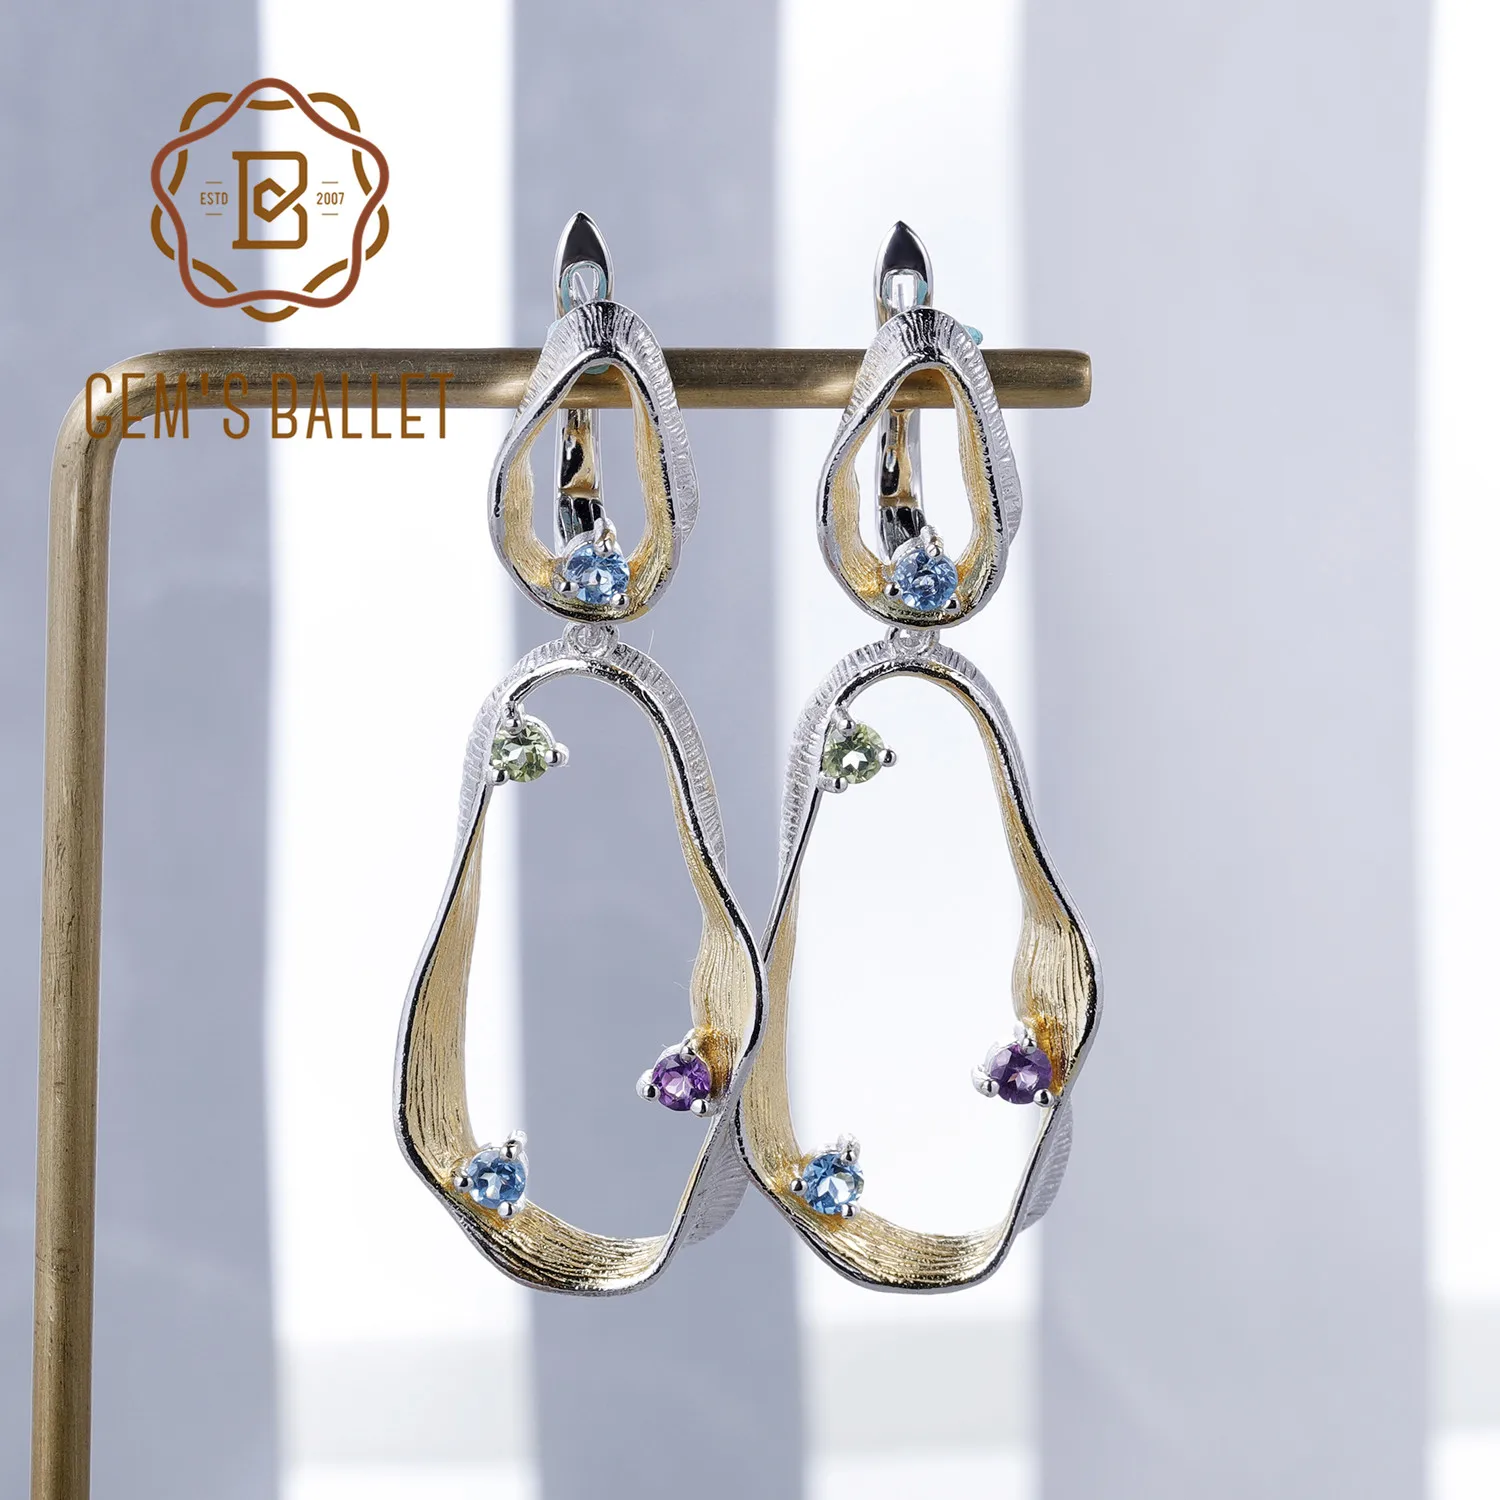 

GEM'S BALLET 925 Sterling Silver Handmade Twist Drop Earrings Natural Topaz Peridot Amethyst Gemstone Earrings for Women Jewelry